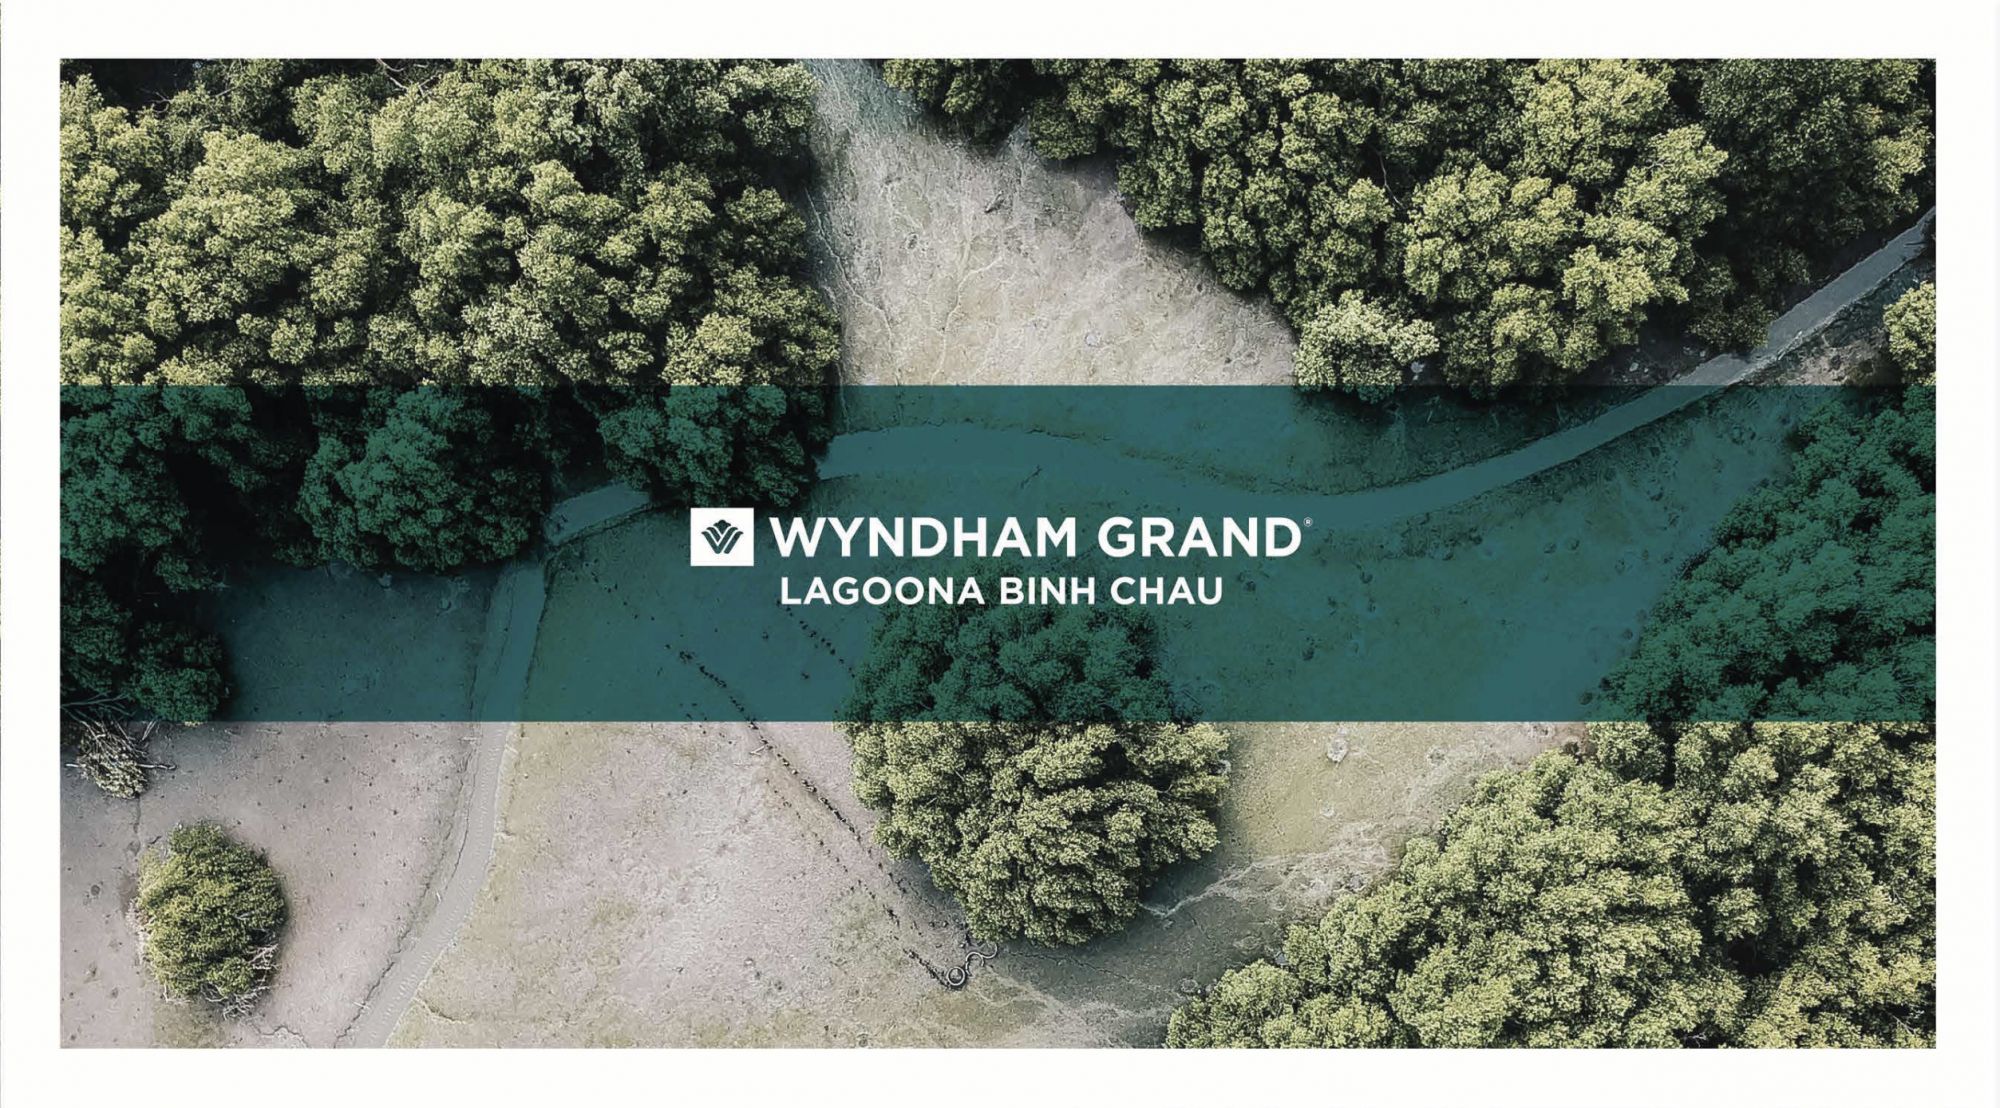 Wyndham Grand Lagoona Bình Châu